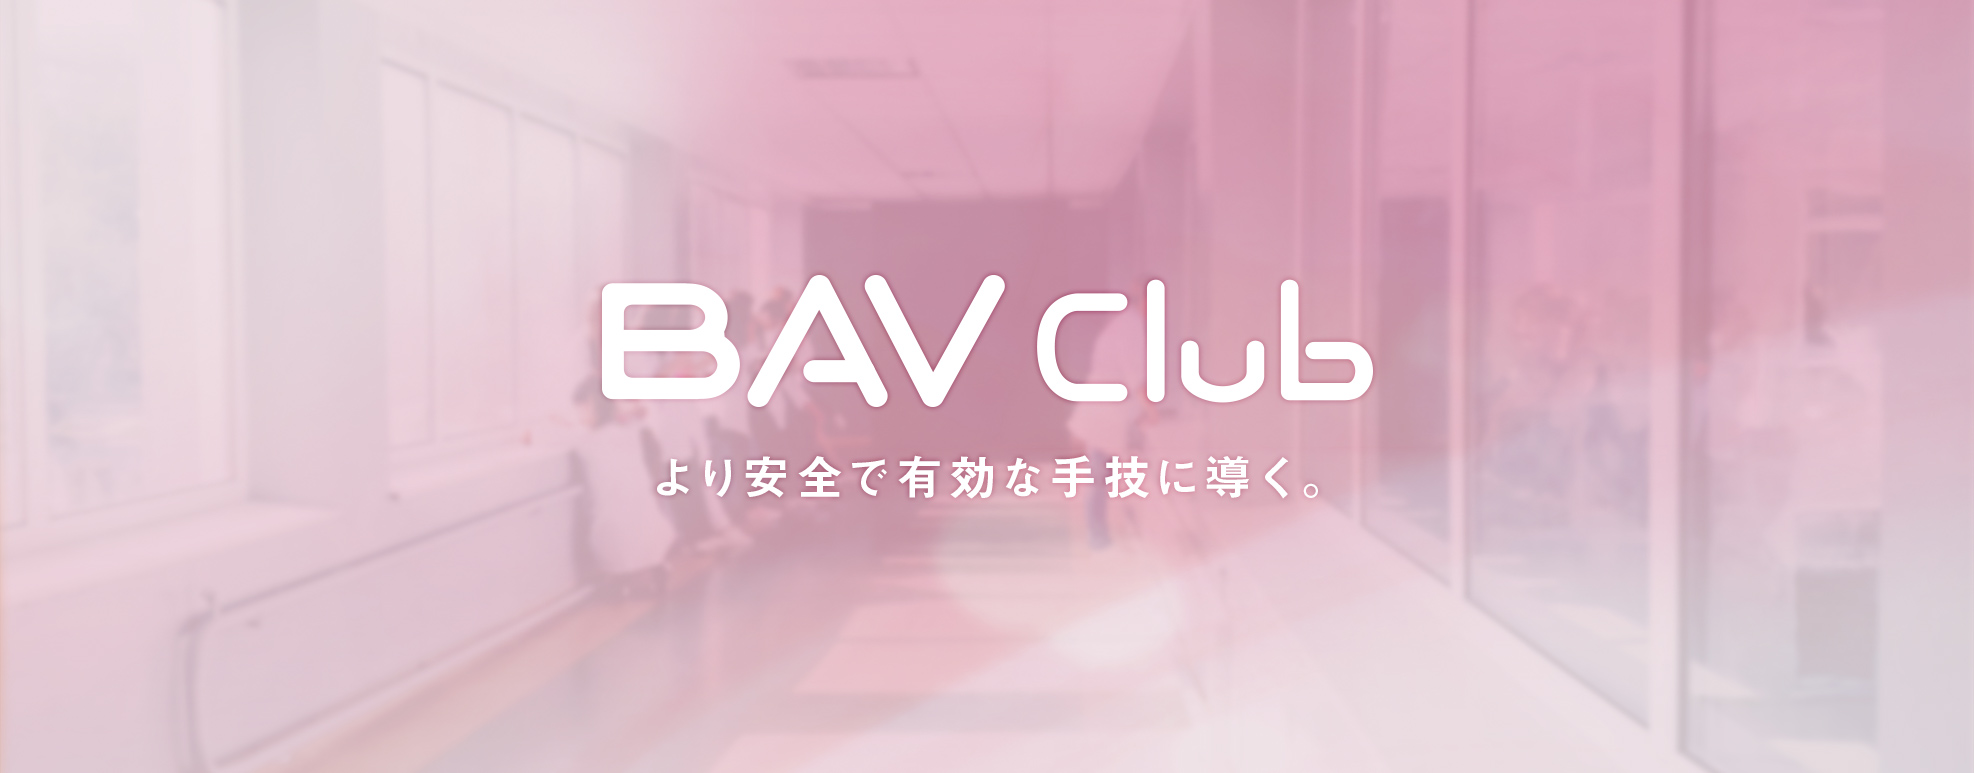 BAV Club